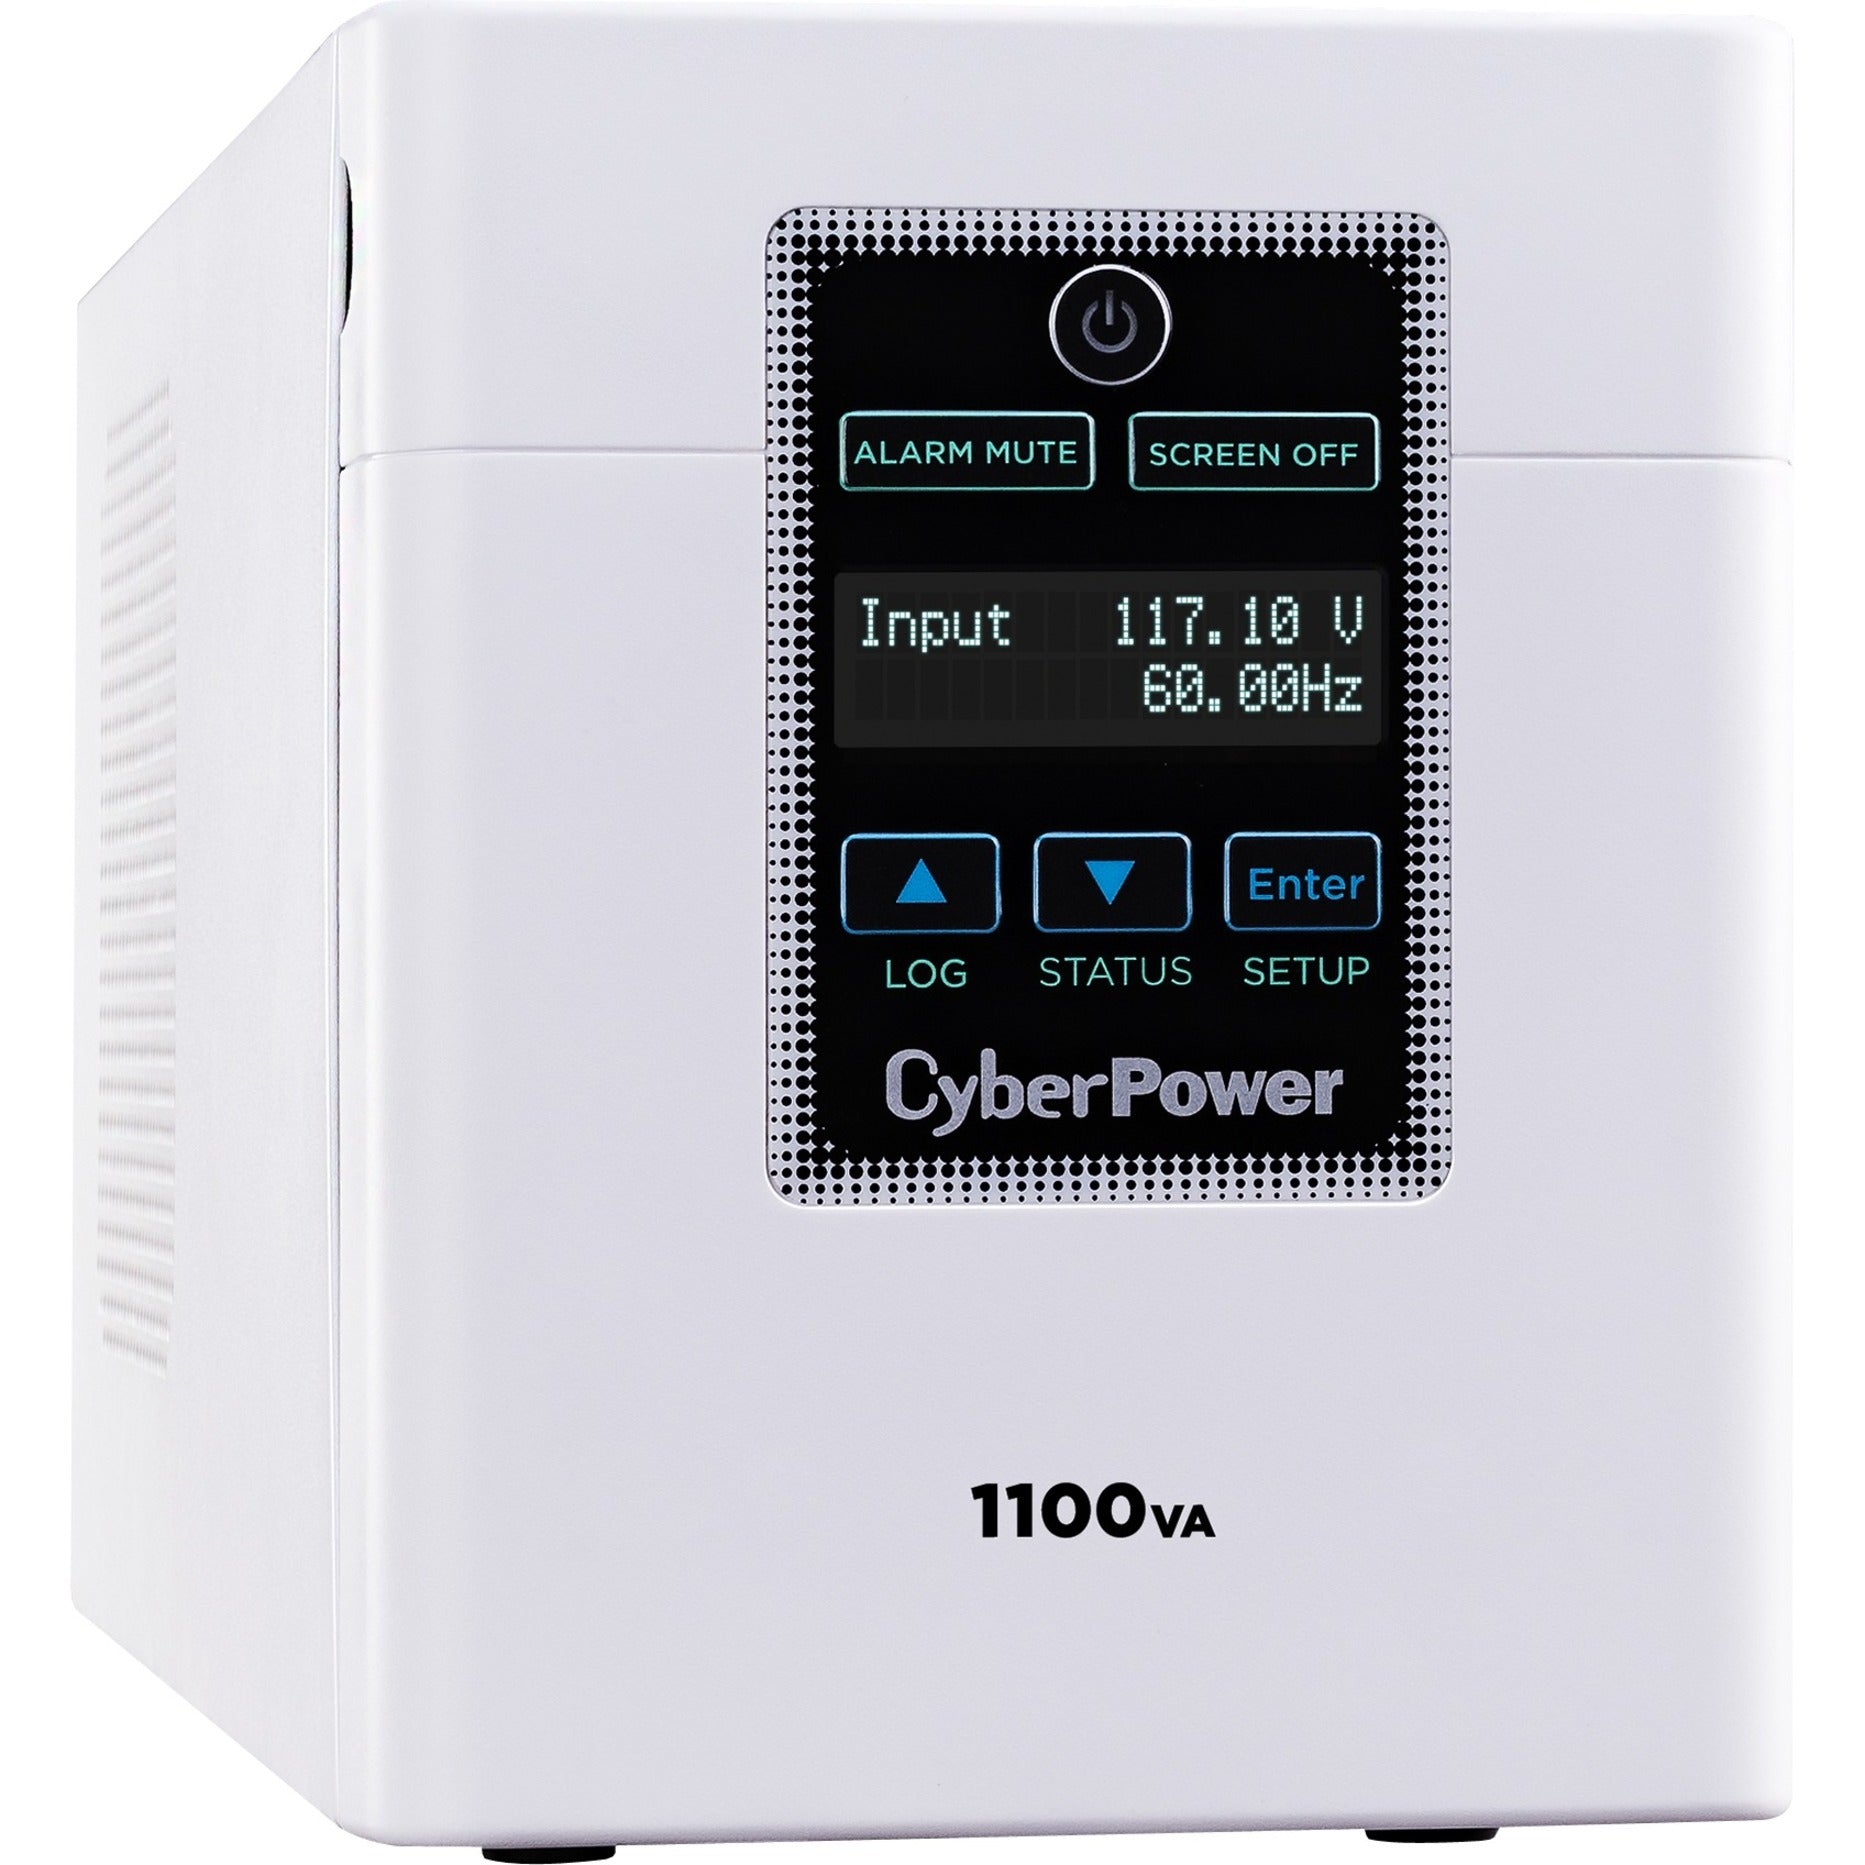 CyberPower M1100XL Fuente de alimentación ininterrumpida de grado médico 1100VA/880W Energy Star garantía de 3 años certificado RoHS. Marca: CyberPower Traducción de la marca: Poder Cibernético.